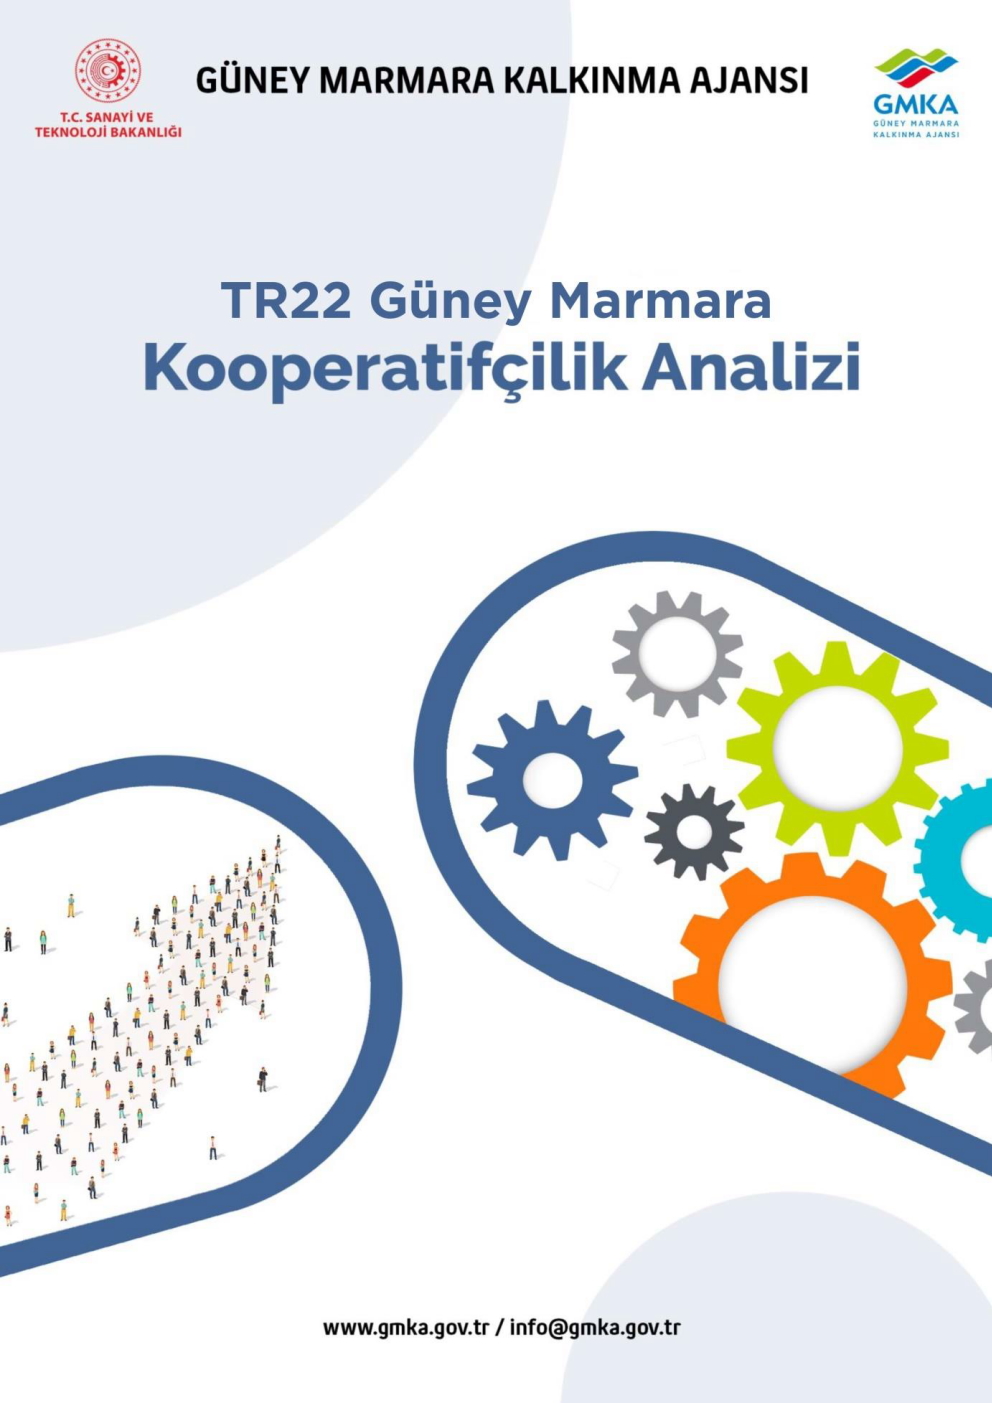 TR22 Güney Marmara Kooperatifçilik Analizi